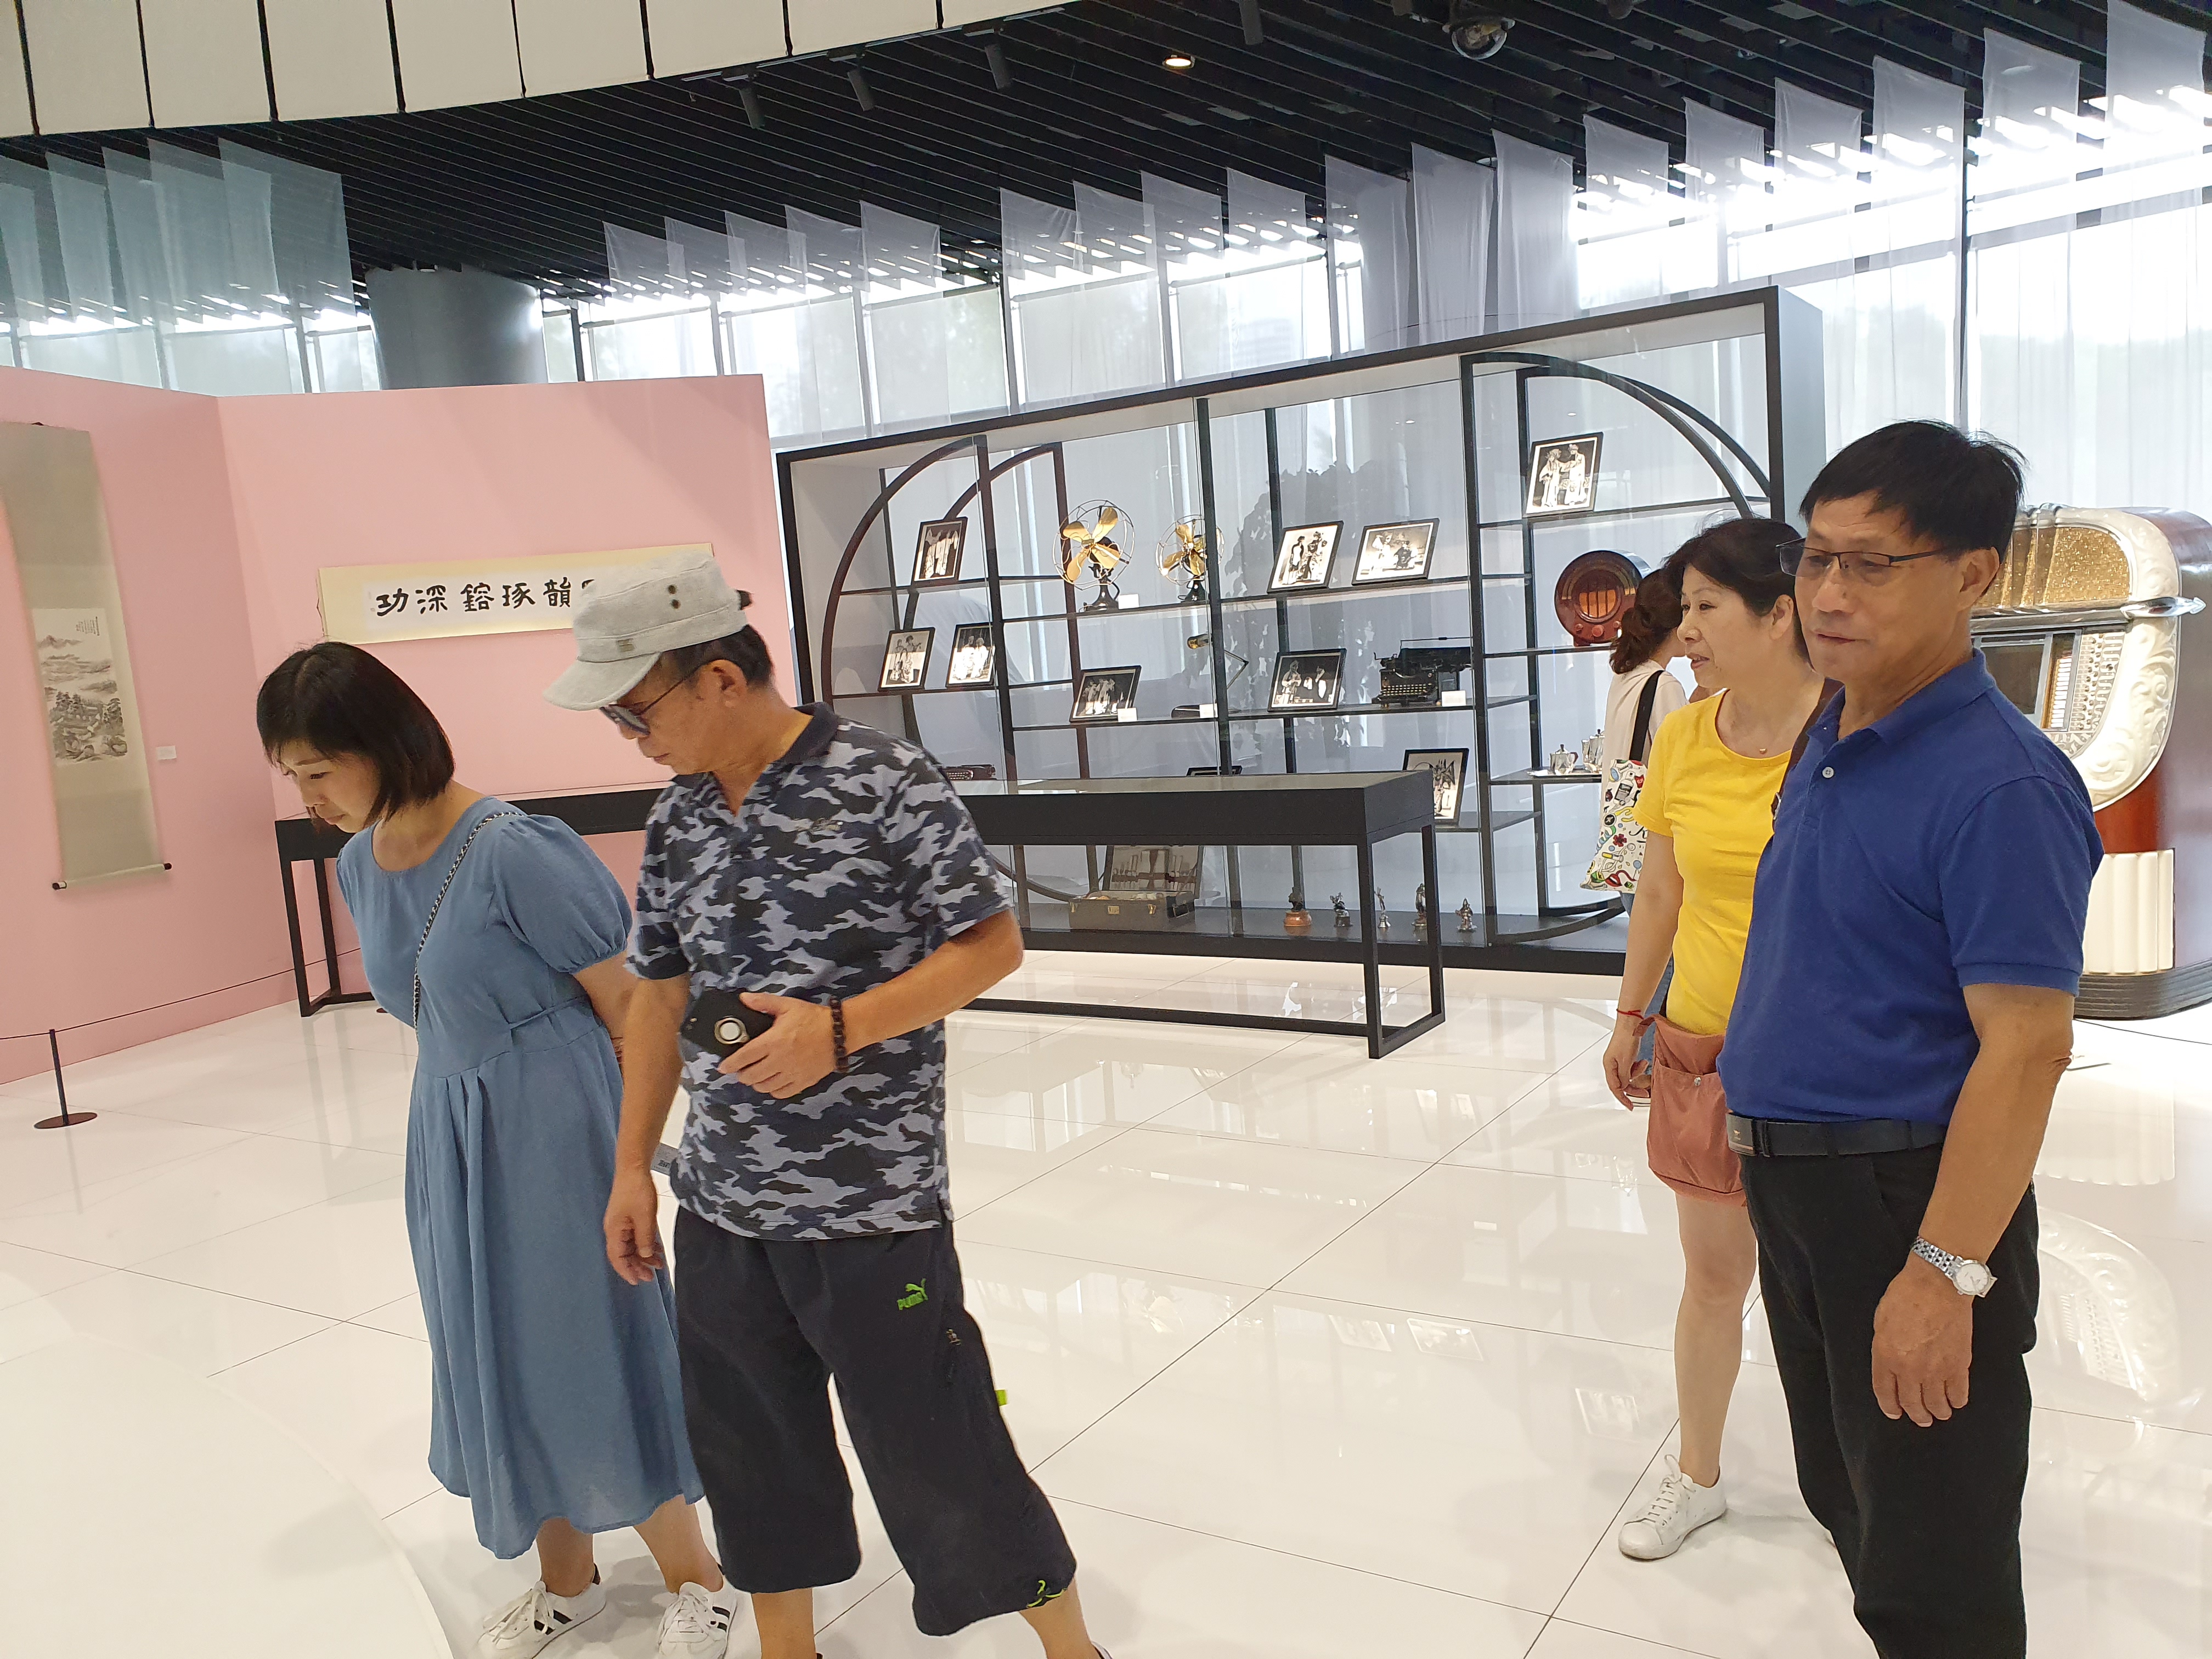 Shanghai bil museum 2019